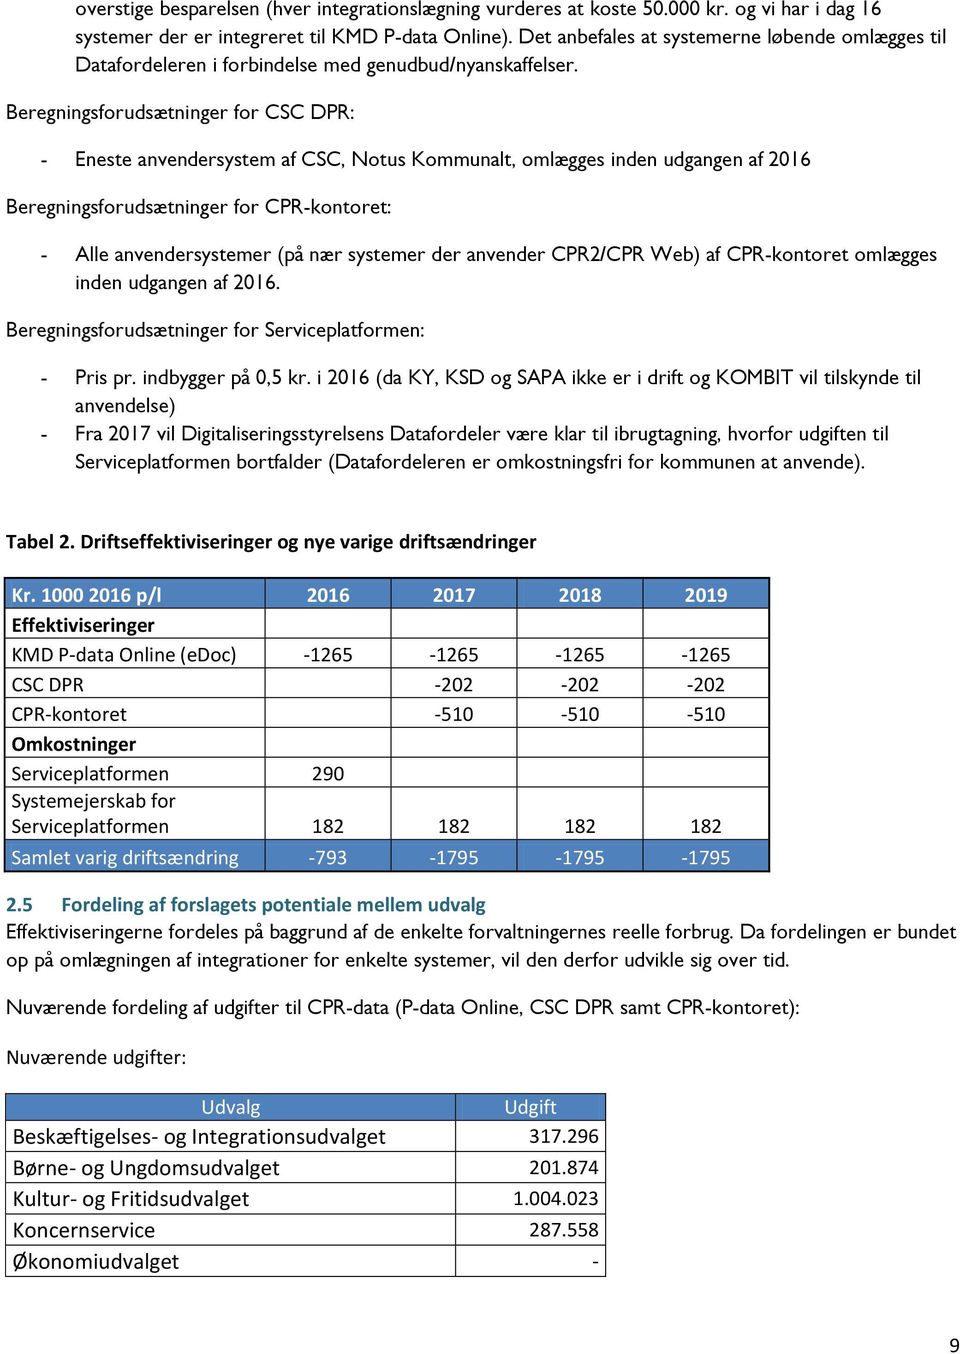 Beregningsforudsætninger for CSC DPR: - Eneste anvendersystem af CSC, Notus Kommunalt, omlægges inden udgangen af 2016 Beregningsforudsætninger for CPR-kontoret: - Alle anvendersystemer (på nær